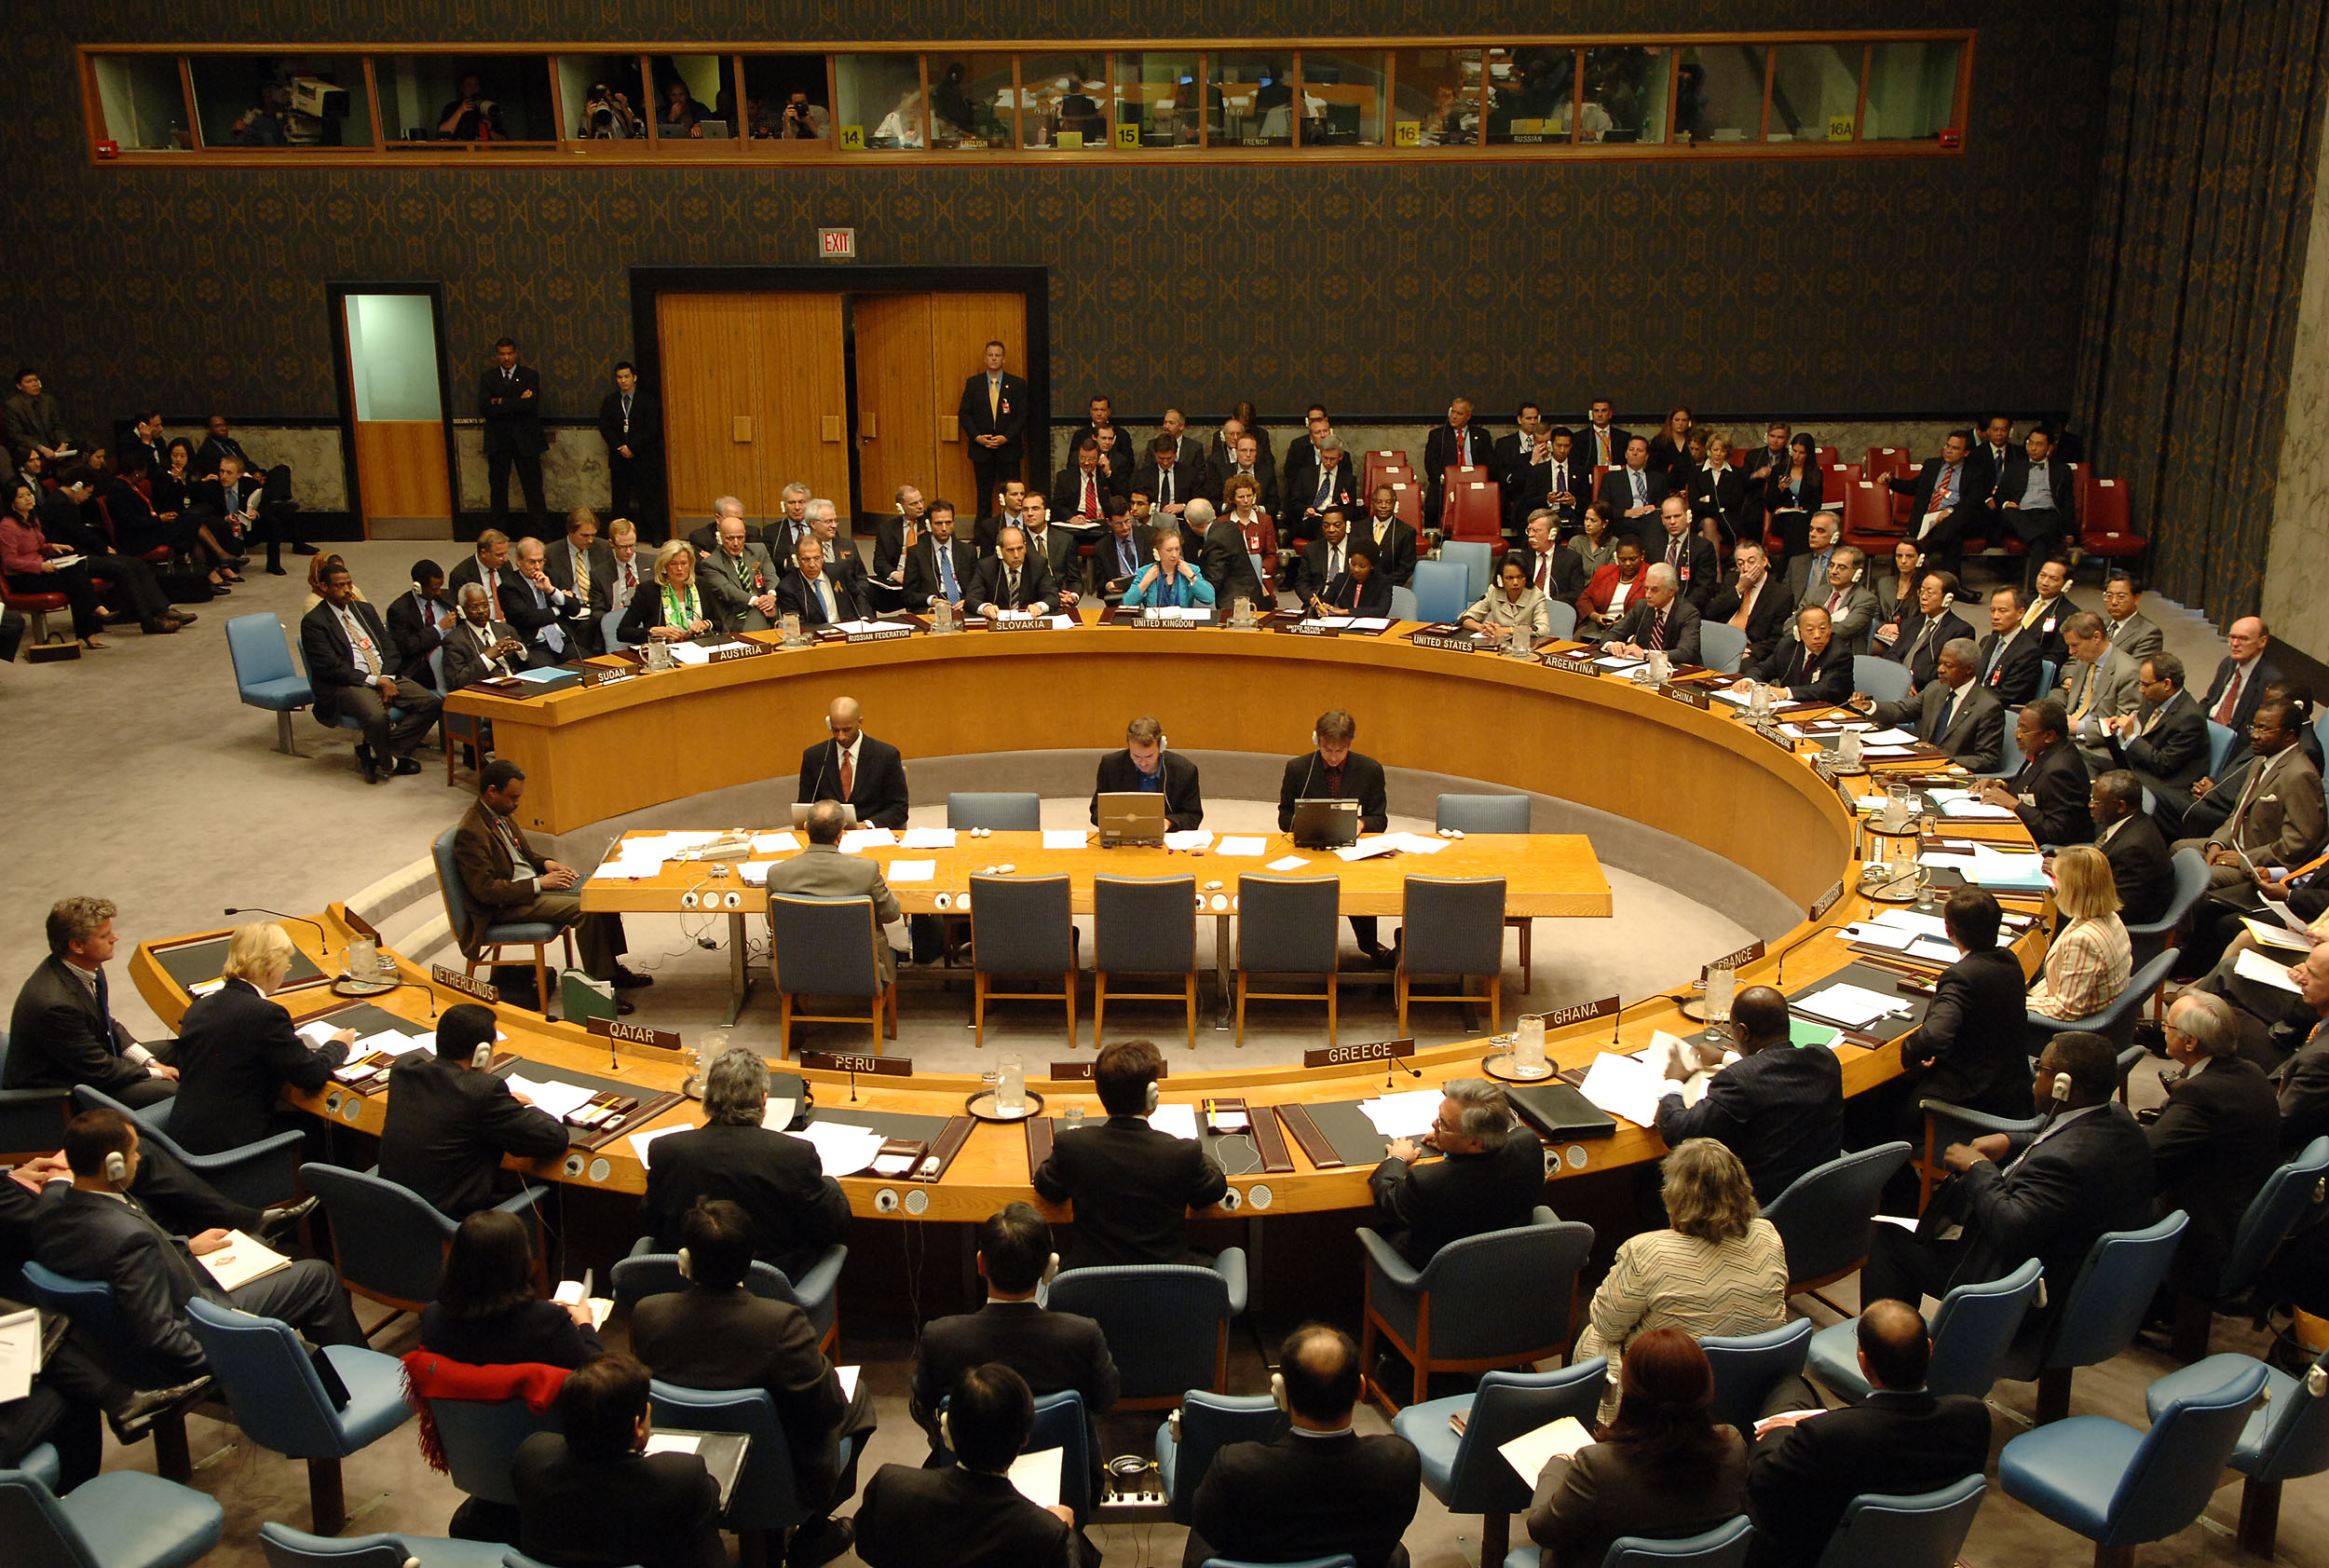 دبلوماسيين يمنيين: قرار مجلس الأمن سيتضمن تدخل عسكري محدود لحماية الشركات النفطية